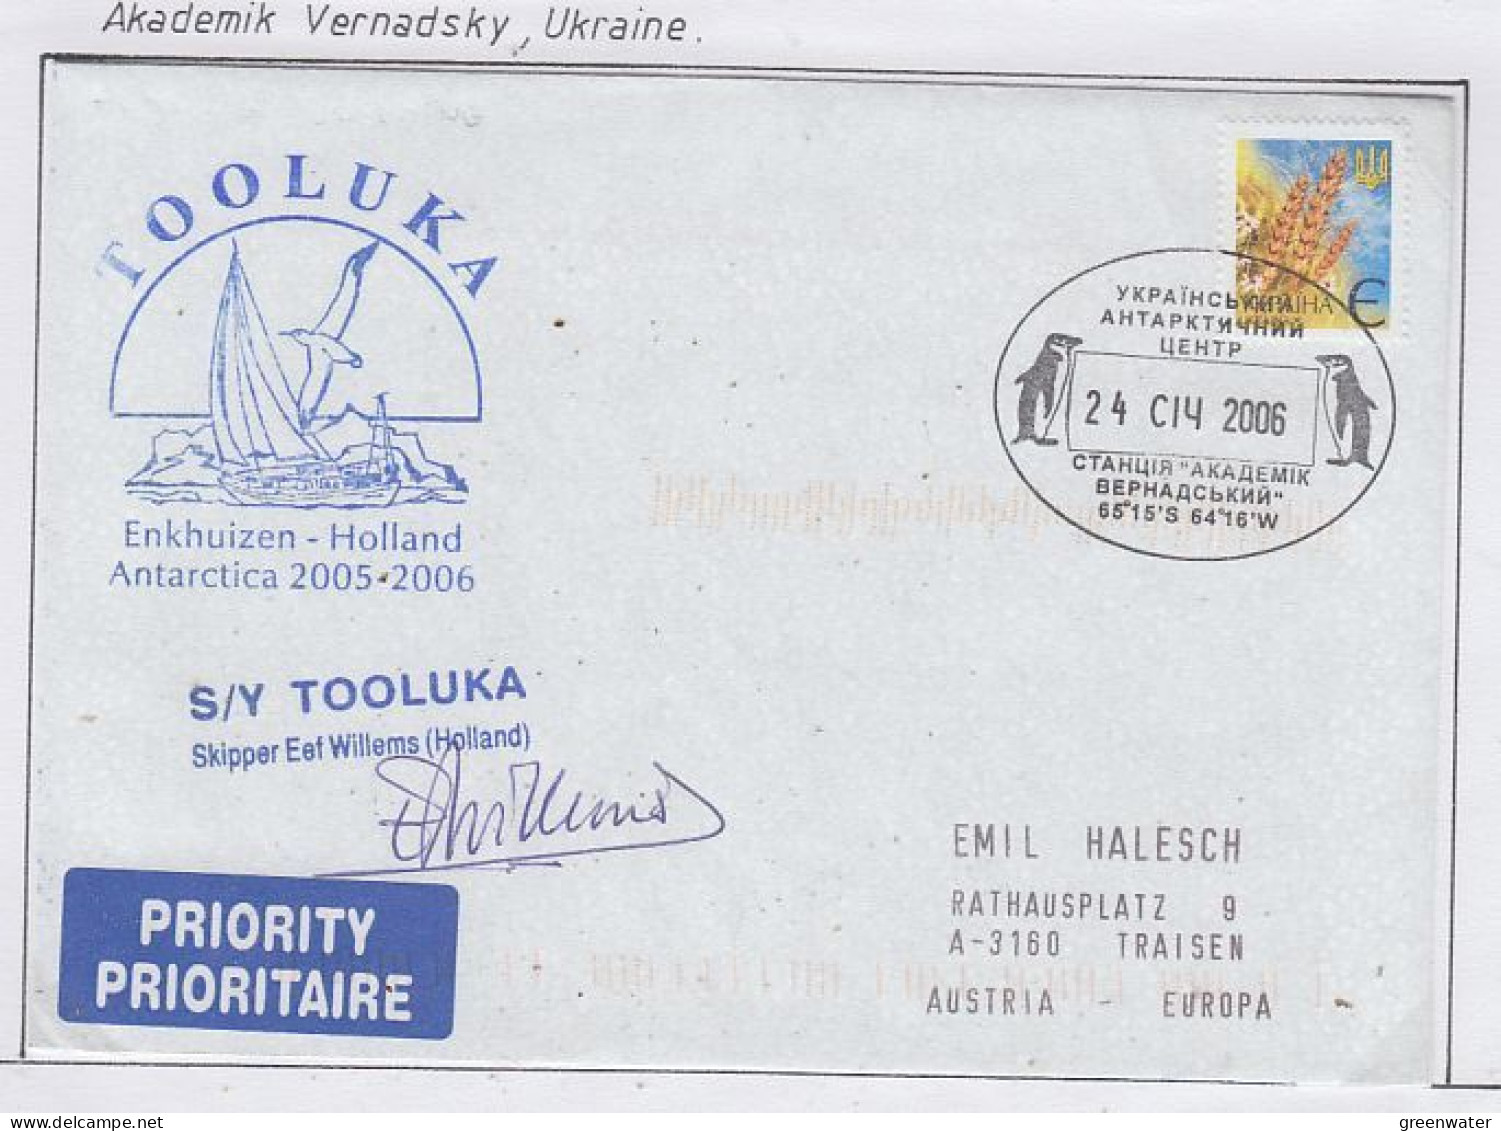 Ukraine Ship Visit SY Tooluka To Base Akademik Vernadsky Signature  2006 (59890) - Navires & Brise-glace